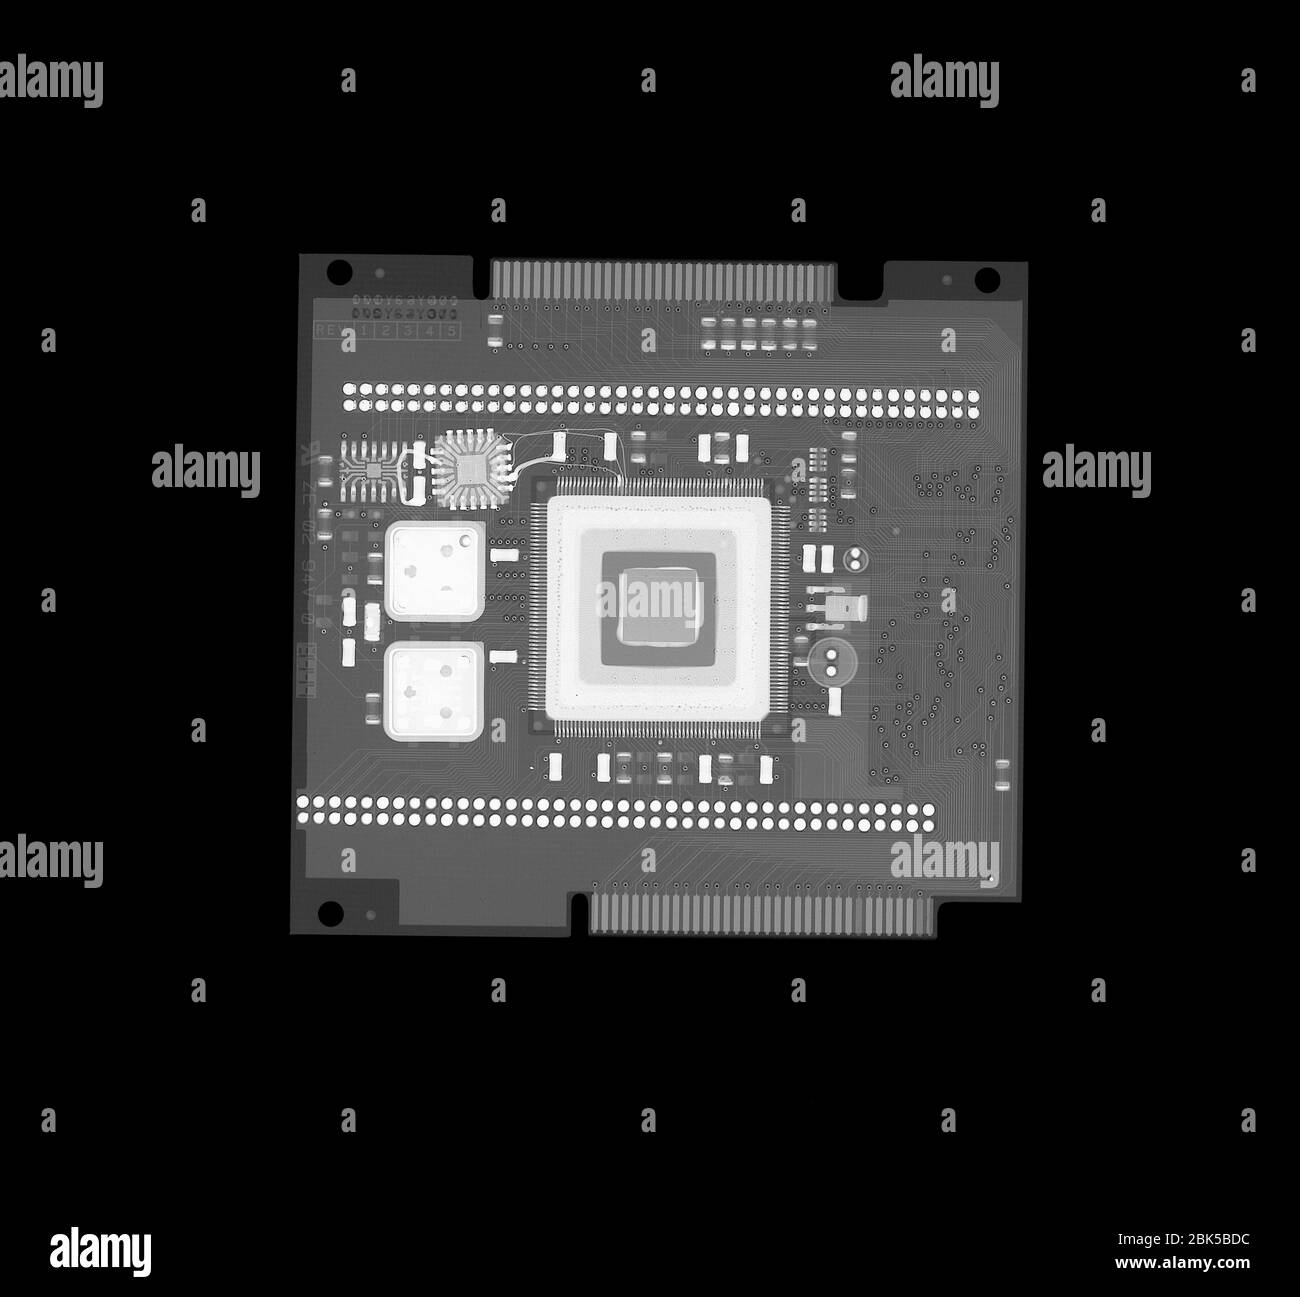 Placa de circuitos del ordenador, rayos X. Foto de stock